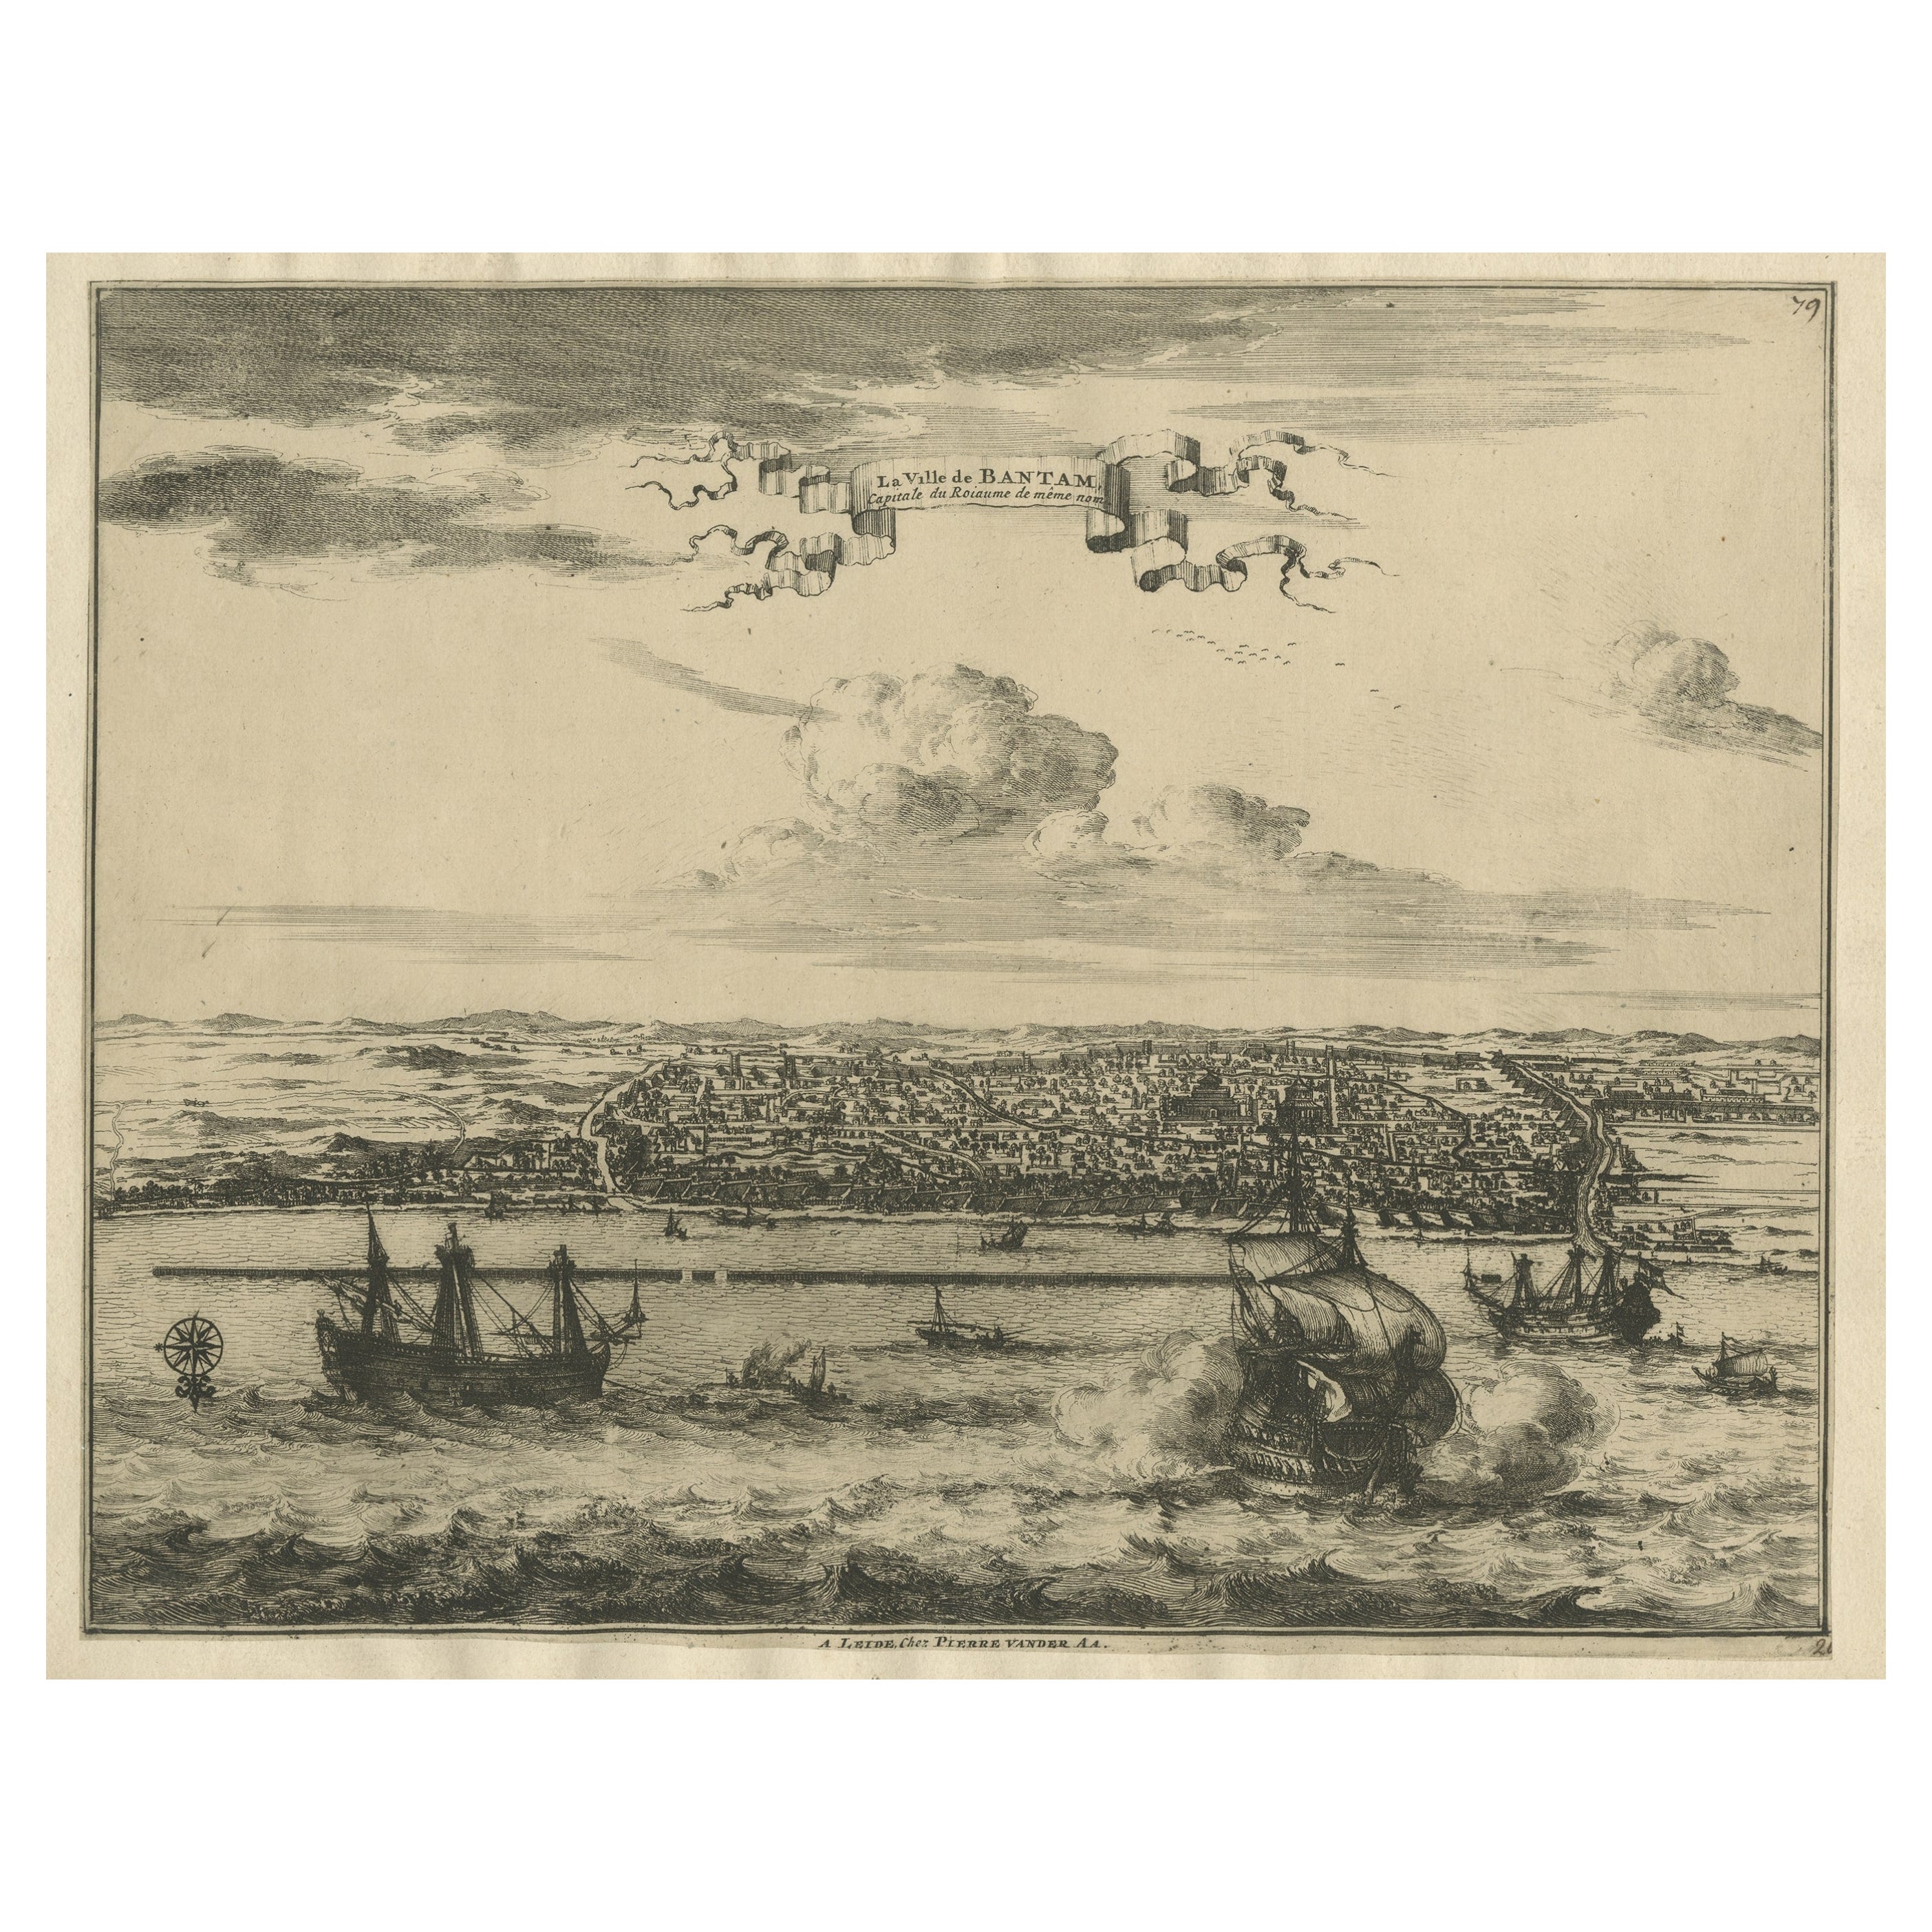 Ansicht der Stadt Banten oder Bantam am Westen von Java, Indonesien, um 1725